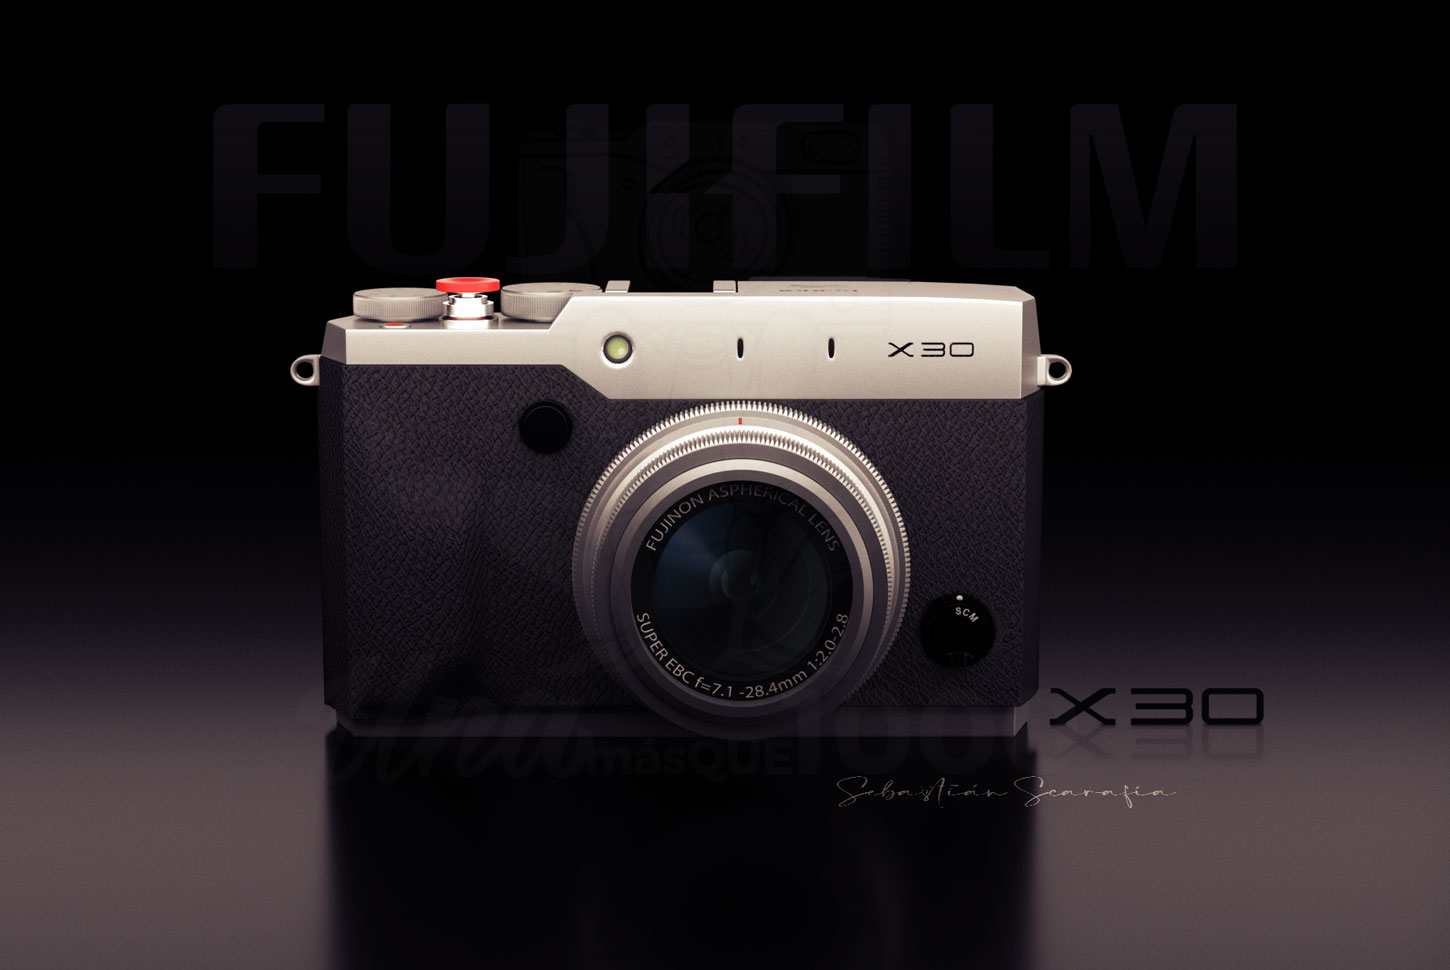 Diseño 3D cámara de fotos Fujifilm X30 - UNAmasque1000 - Fotografía de productos